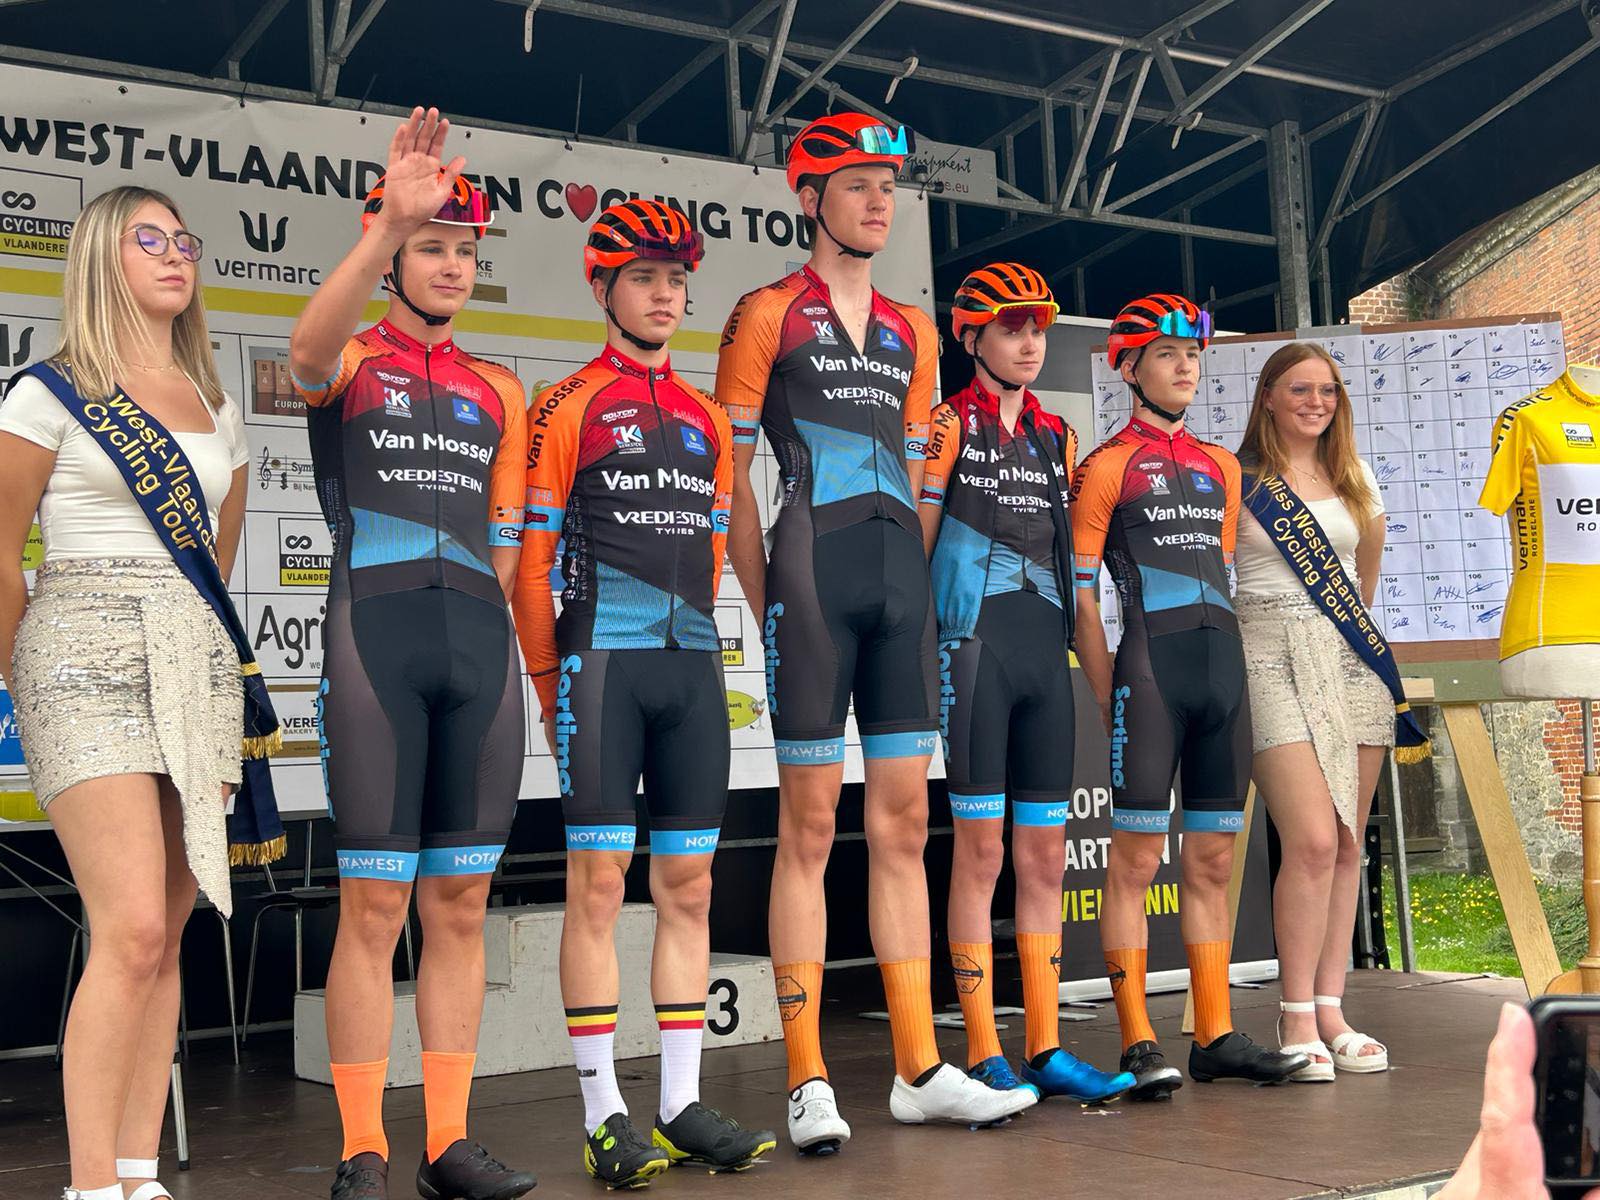 Van Mossel Heist Cycling Team derde in ploegen- én individueel klassement in West-Vlaanderen Cycling Tour